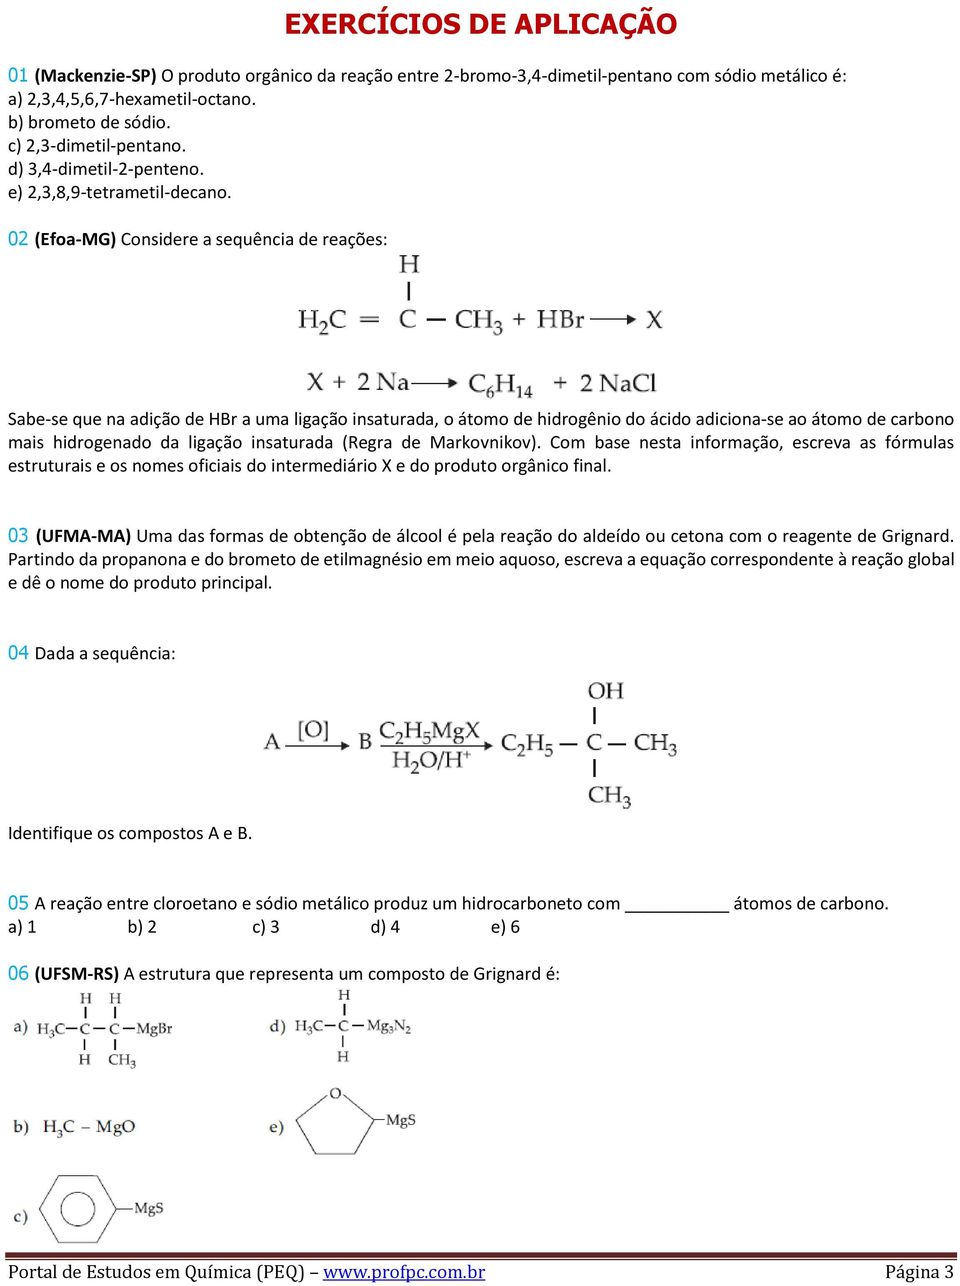 02 (Efoa-MG) Considere a sequência de reações: Sabe-se que na adição de HBr a uma ligação insaturada, o átomo de hidrogênio do ácido adiciona-se ao átomo de carbono mais hidrogenado da ligação